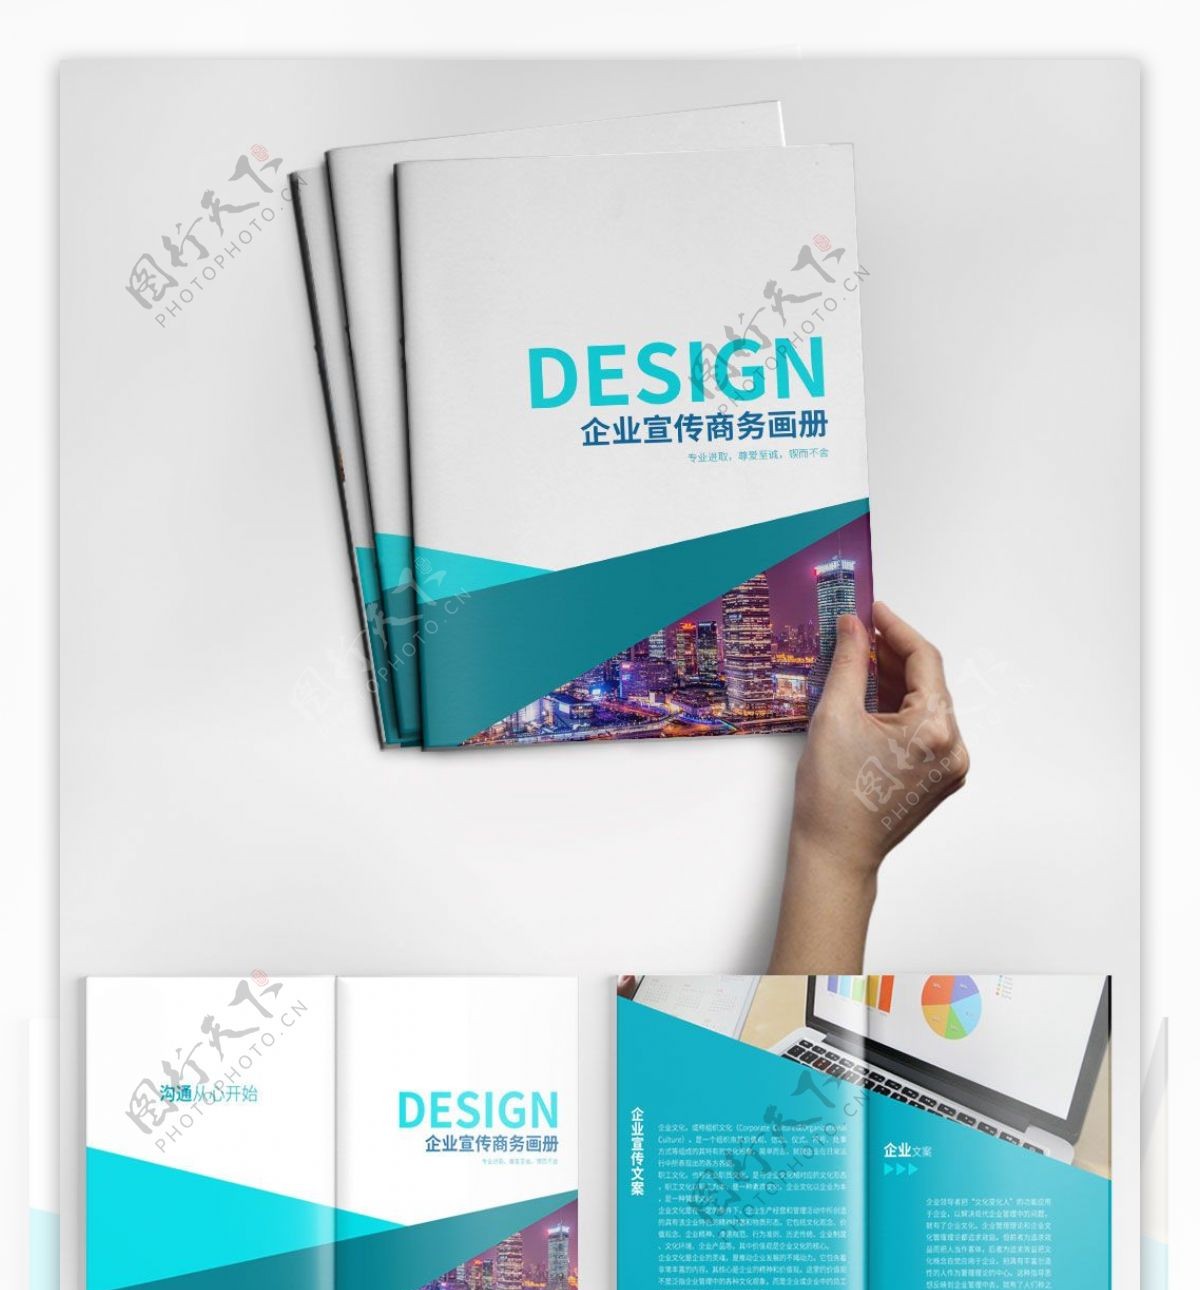 蓝色大气商务宣传画册设计PSD模板